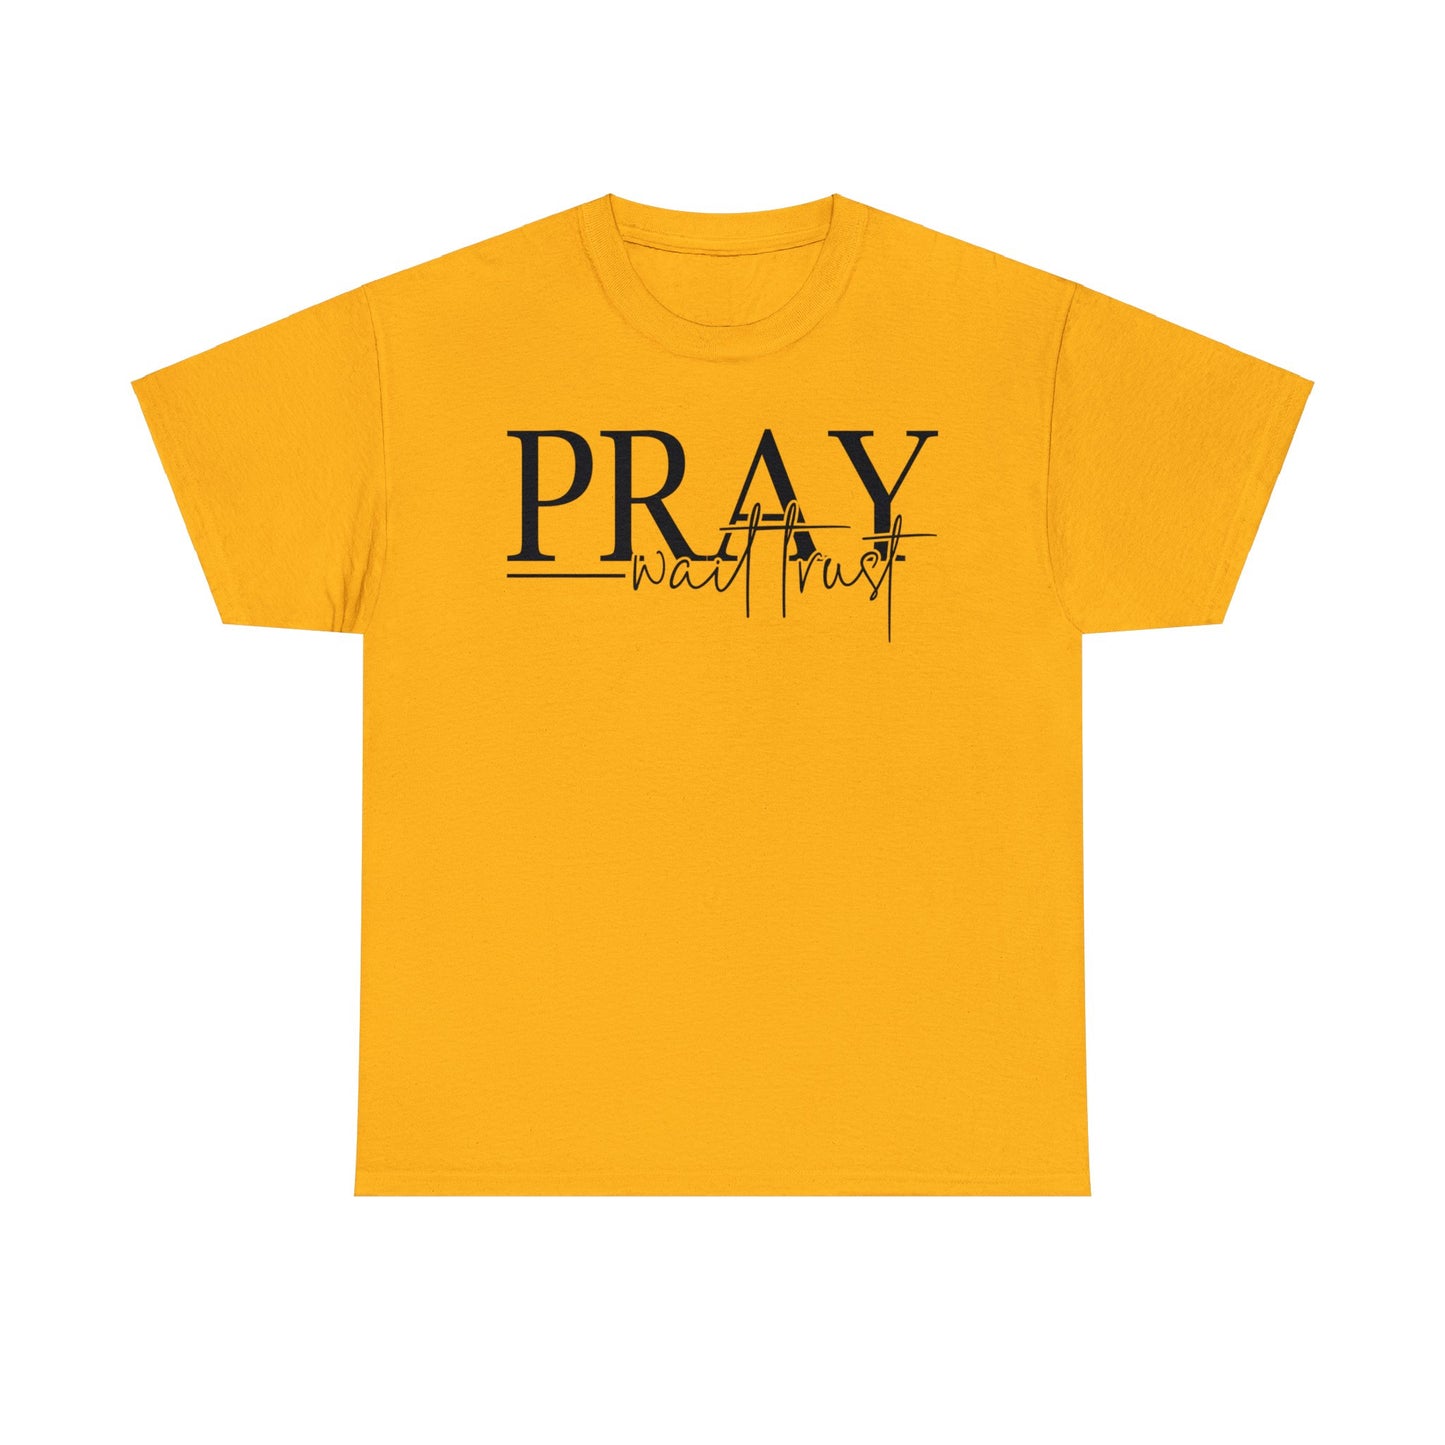 Pray Wait Trust Shirt, Christian Shirt, Religious Shirt, Faith Tee (Faith-18)